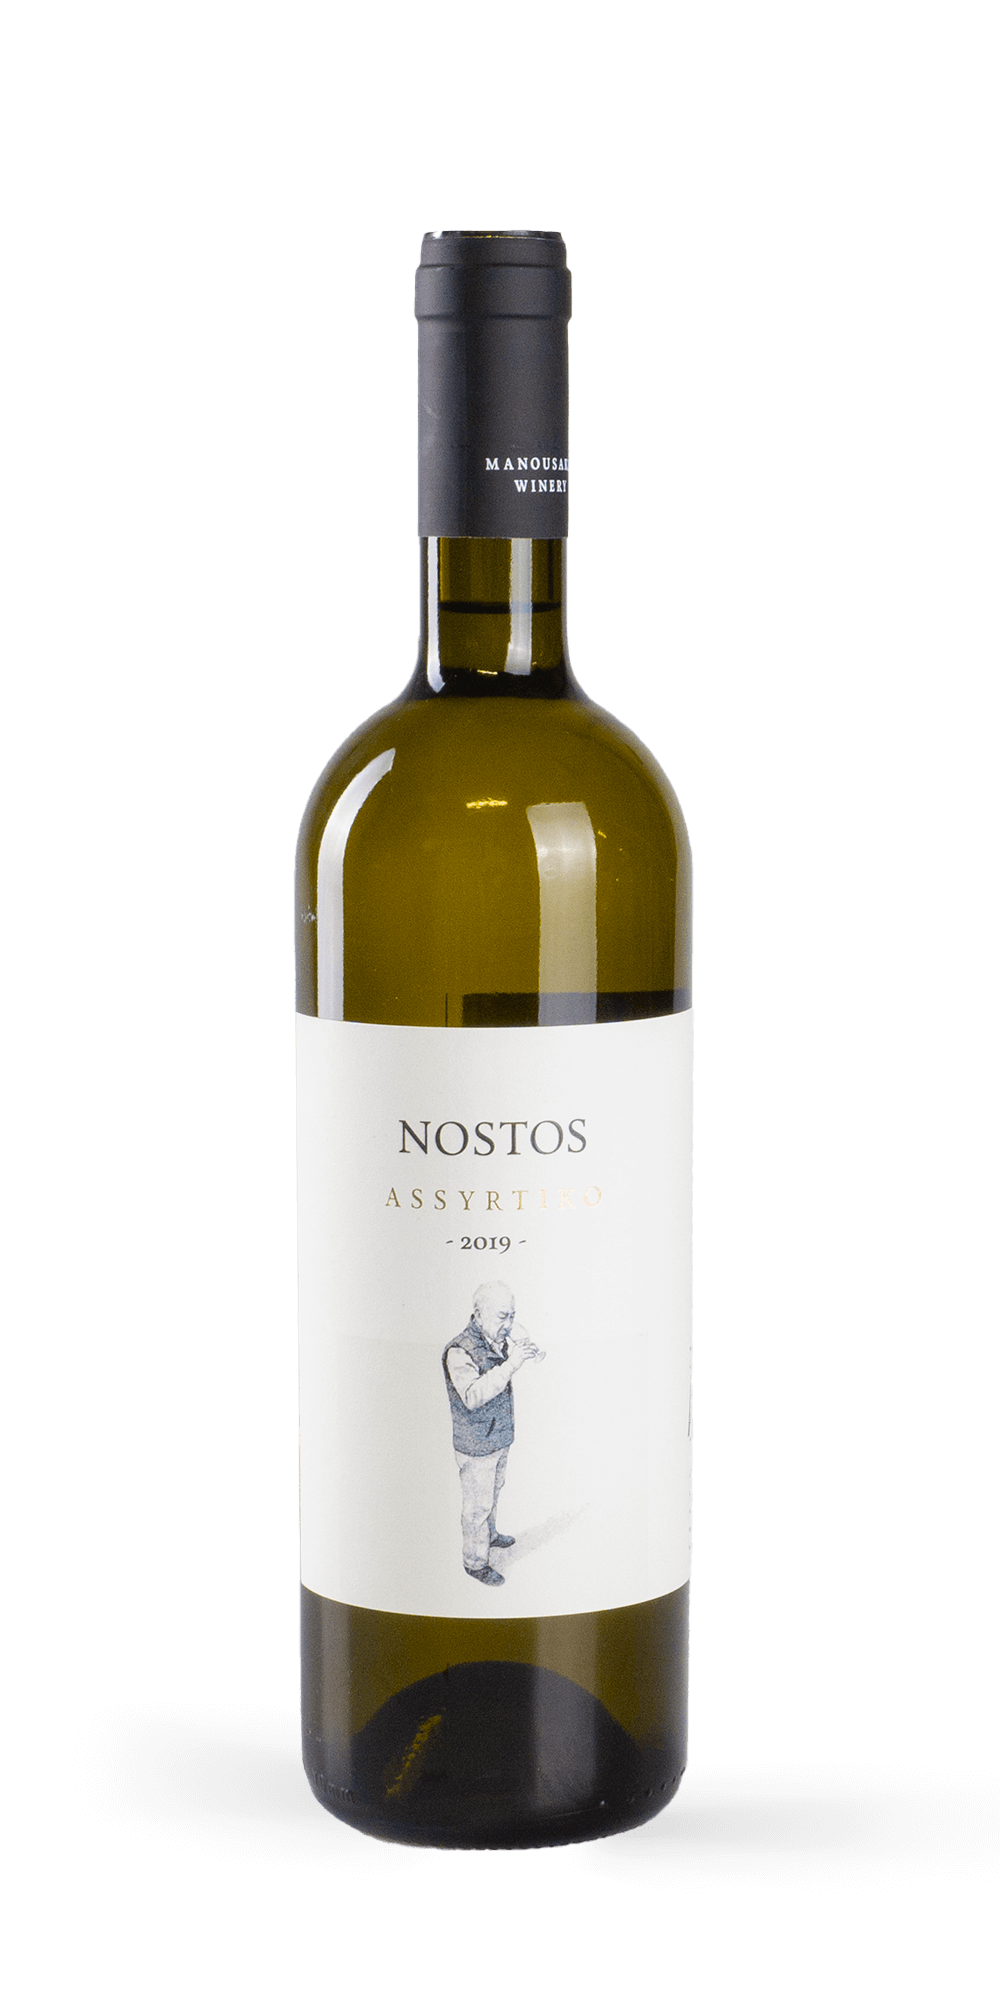 Nostos Assyrtiko 2018 - Manousakis Winery